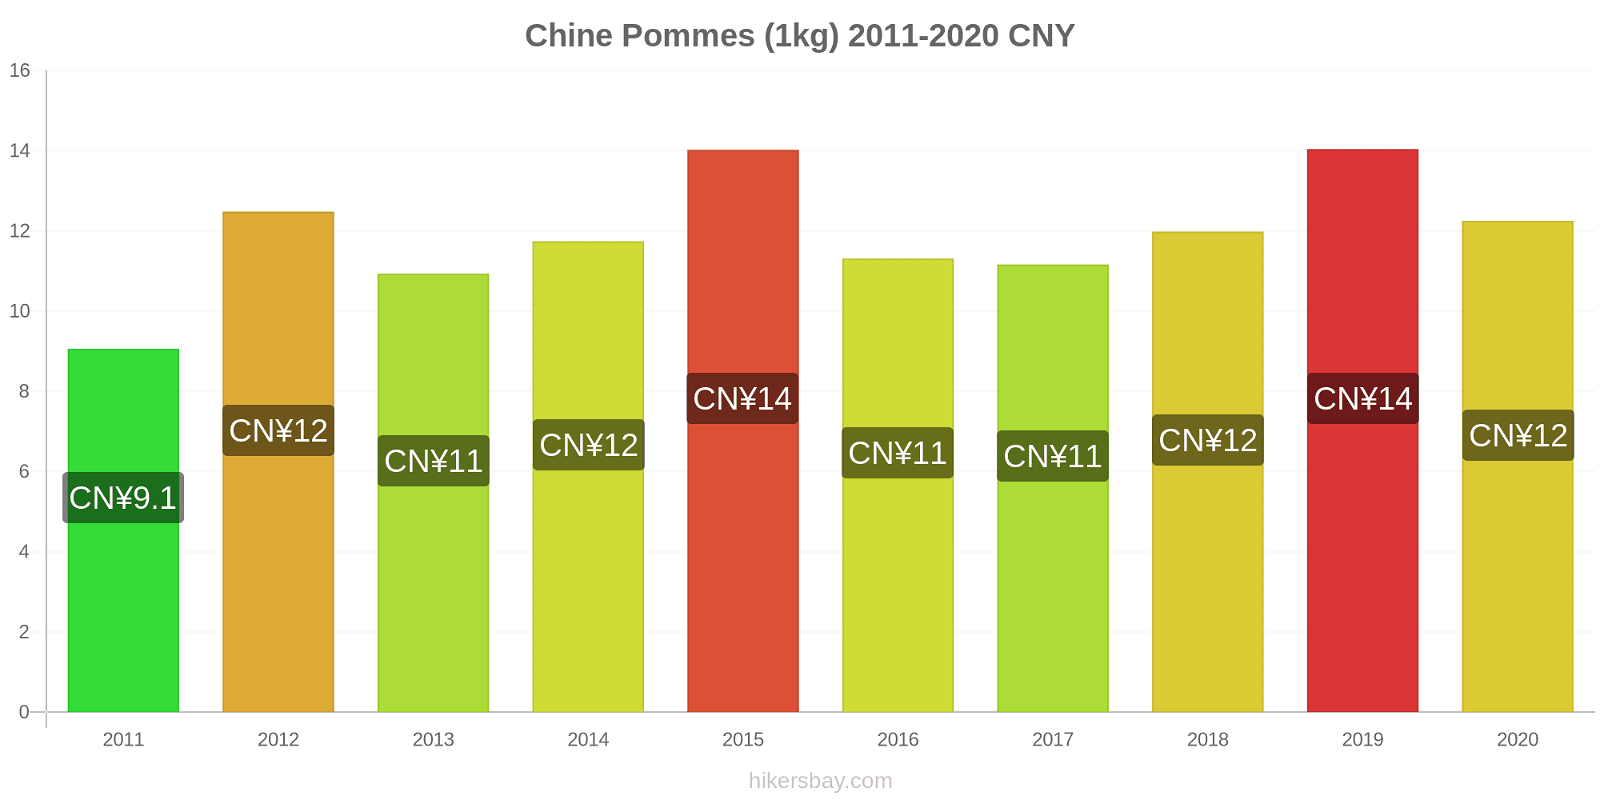 Chine changements de prix Pommes (1kg) hikersbay.com